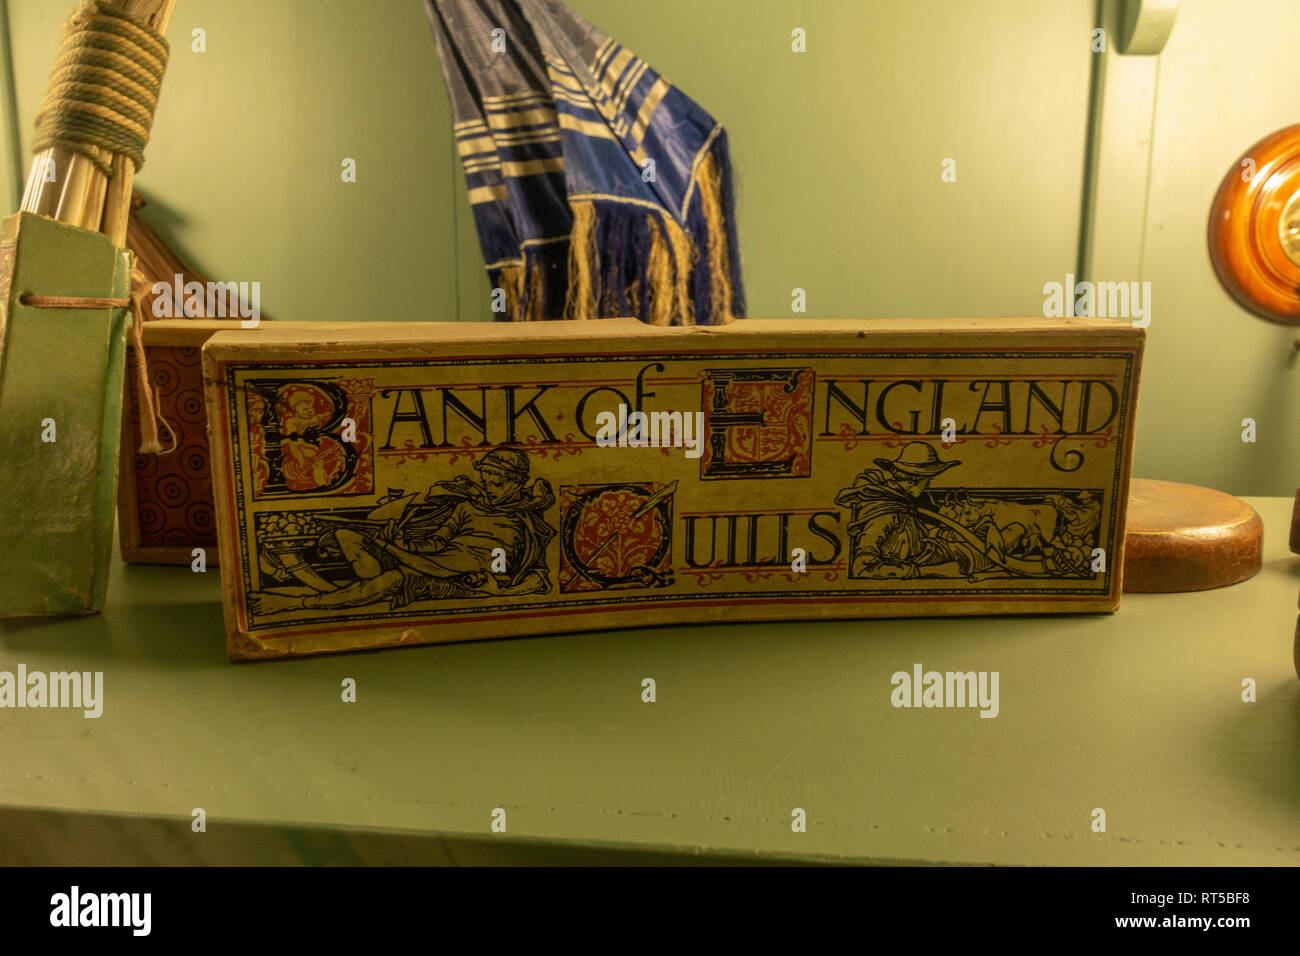 Une boîte de banque d'Angleterre sur les piquants s'affichent dans la papeterie Kirkgate, York Castle Museum, York, Yorkshire, UK. Banque D'Images